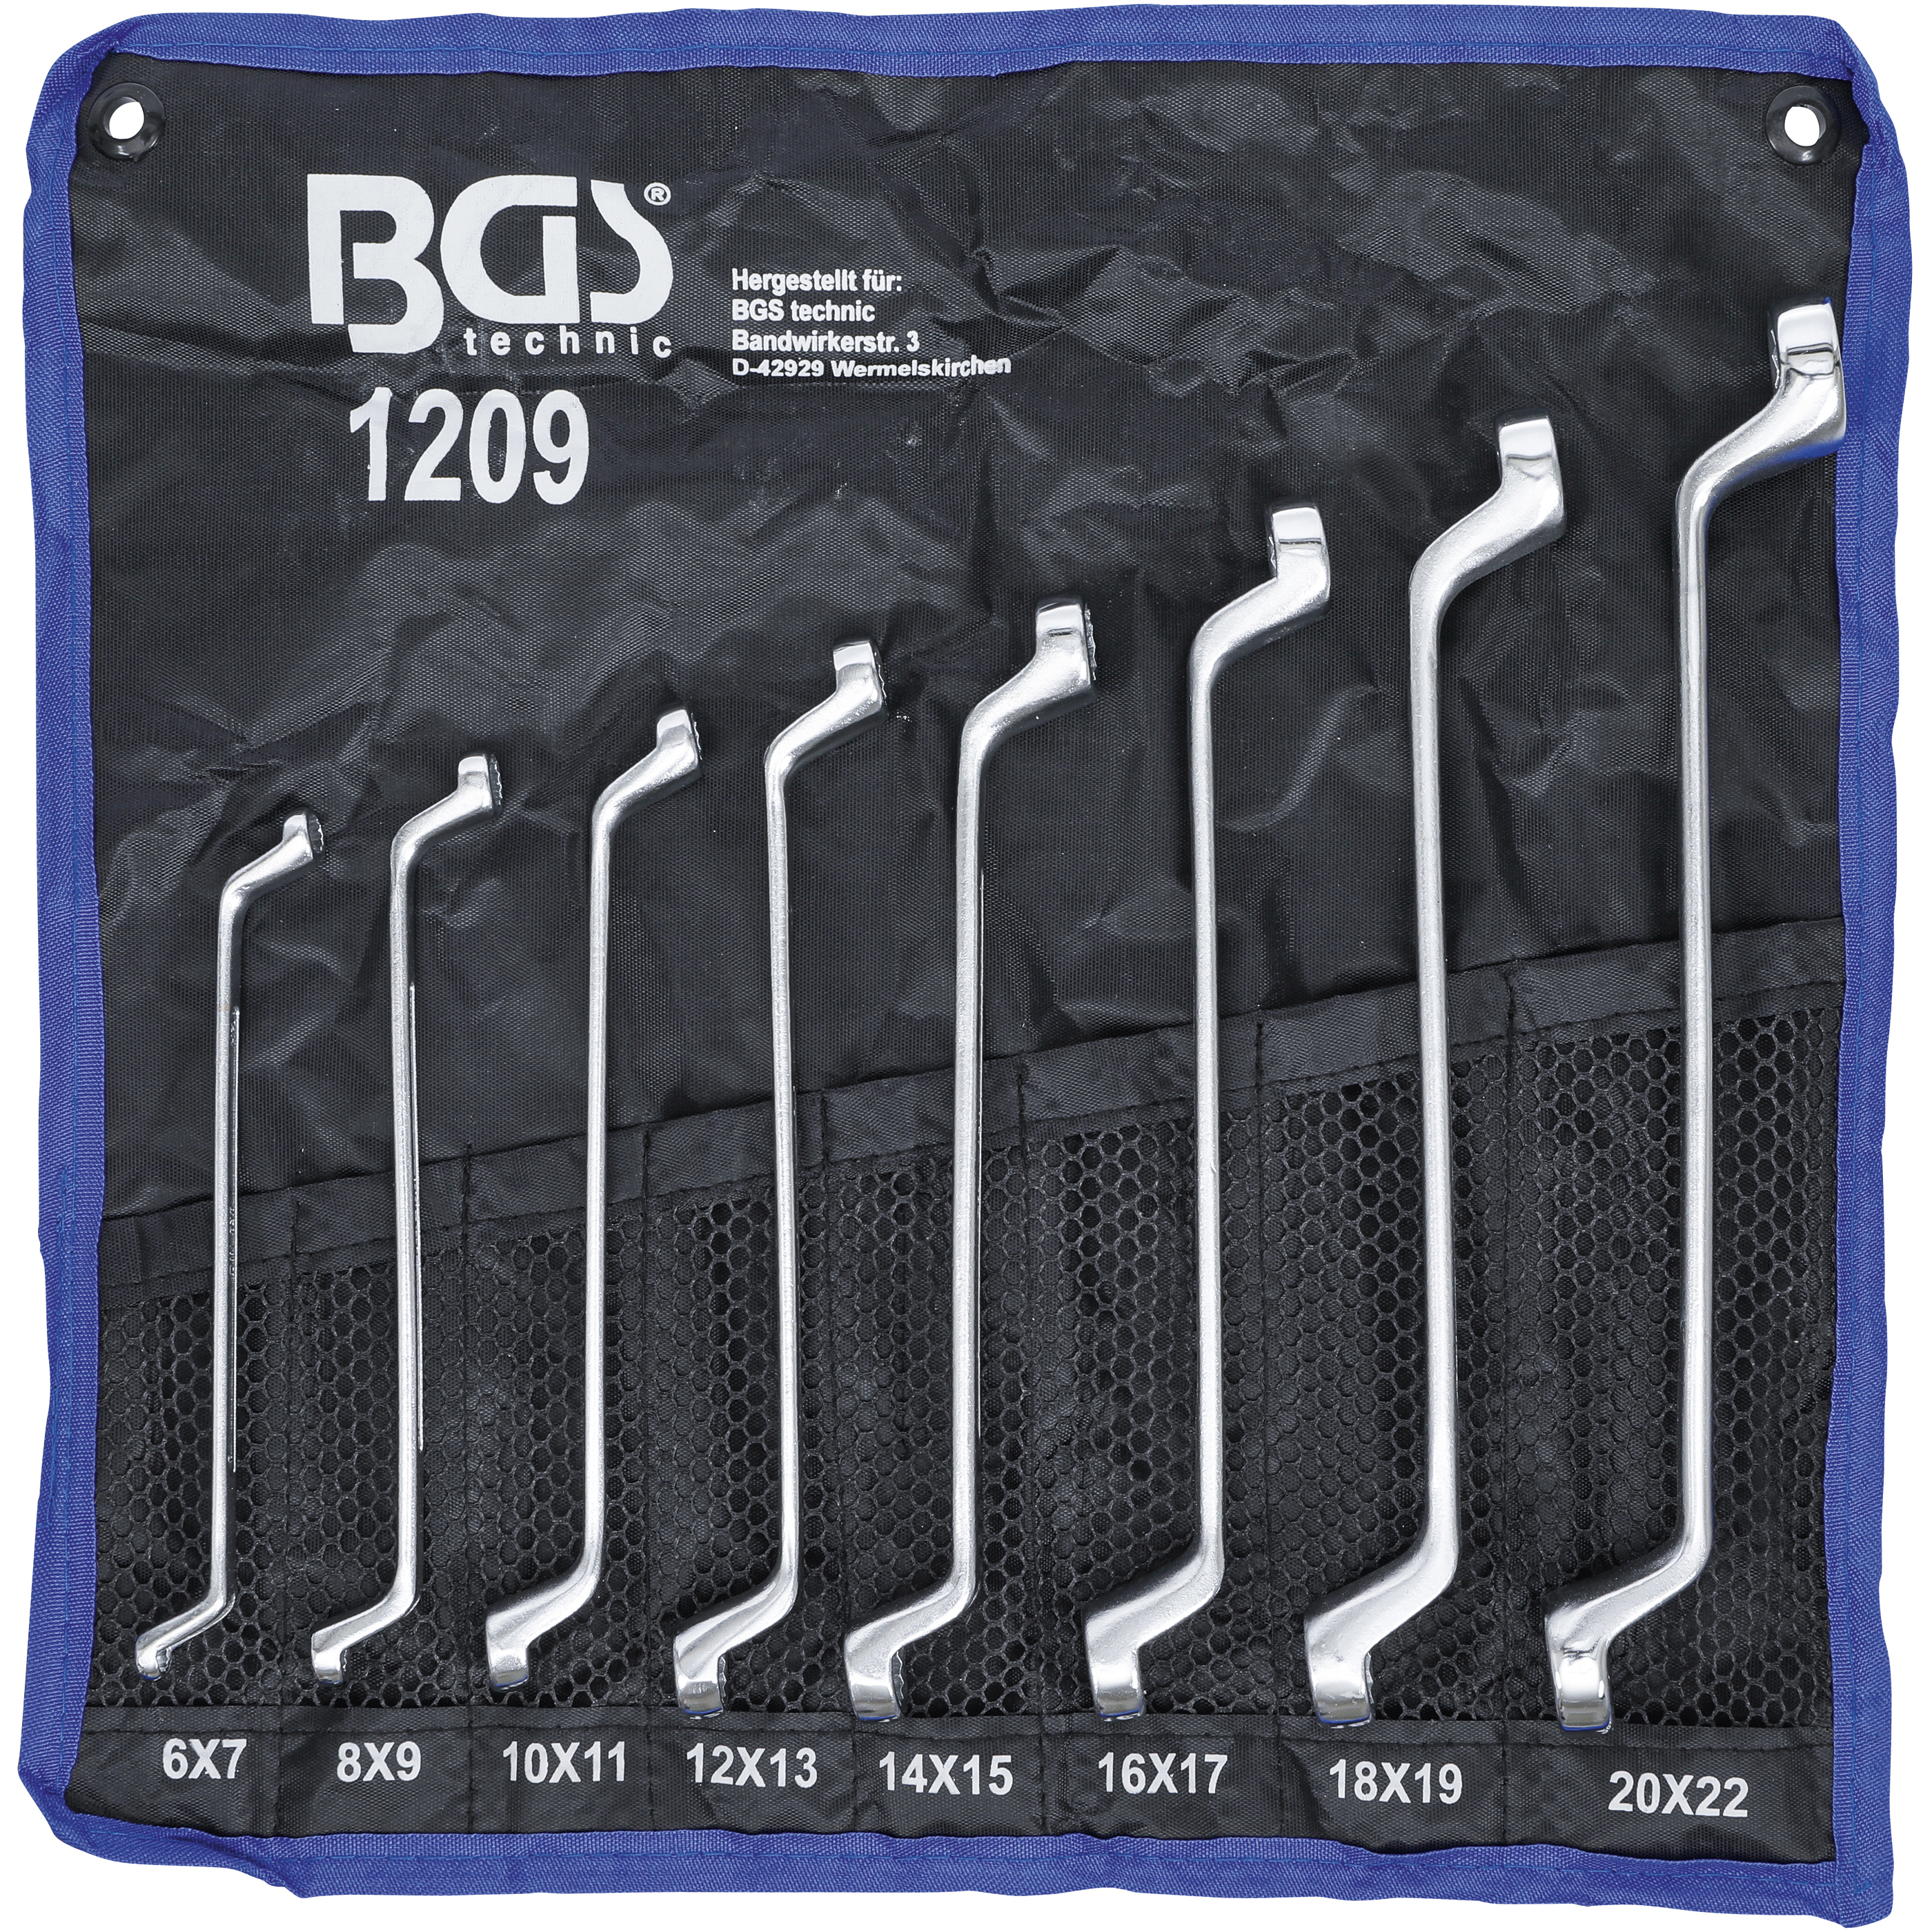 BGS 1209 - Jeu de clés à œil doubles - coudées - 6 x 7 - 20 x 22